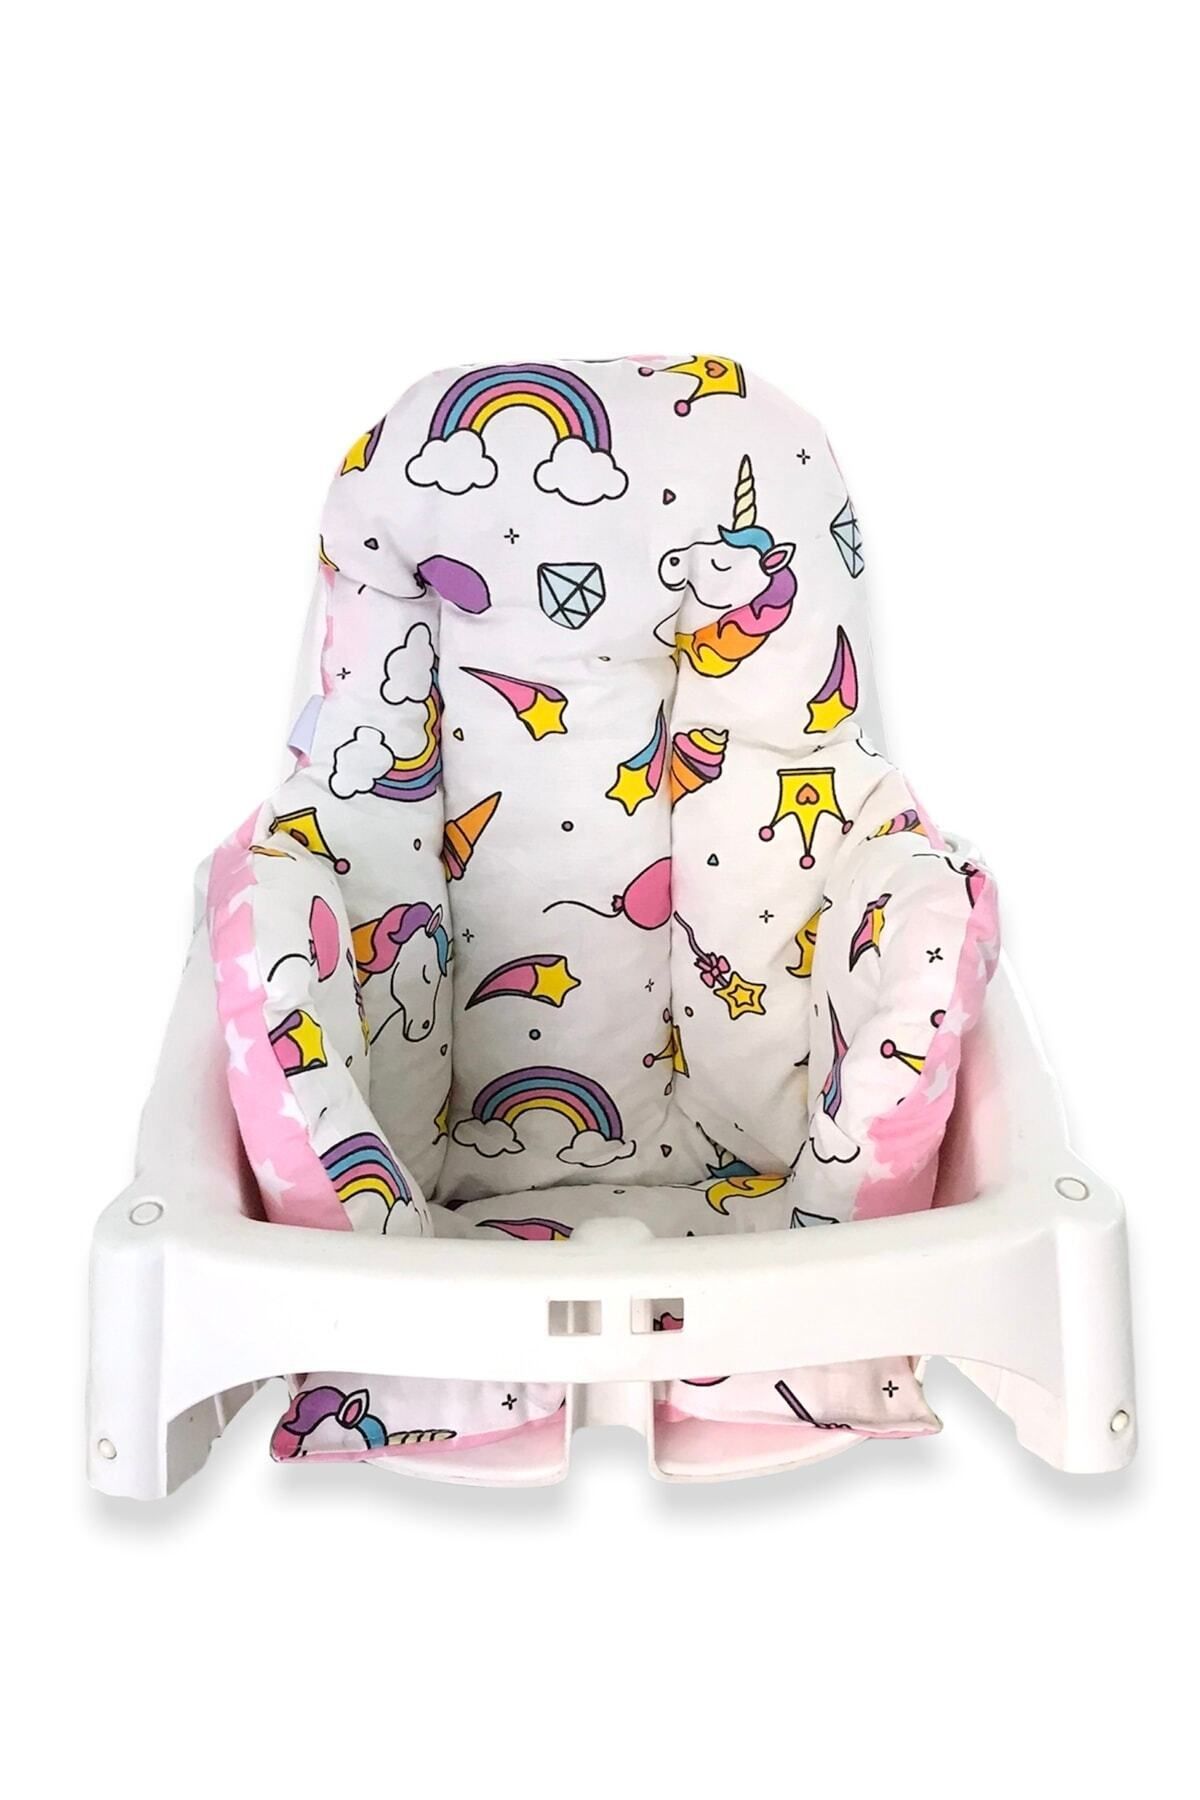 Babynia Pamuk Bebek Çocuk Mama Sandalyesi Minderi Beyaz Pembe Unicorn Yıldızlı